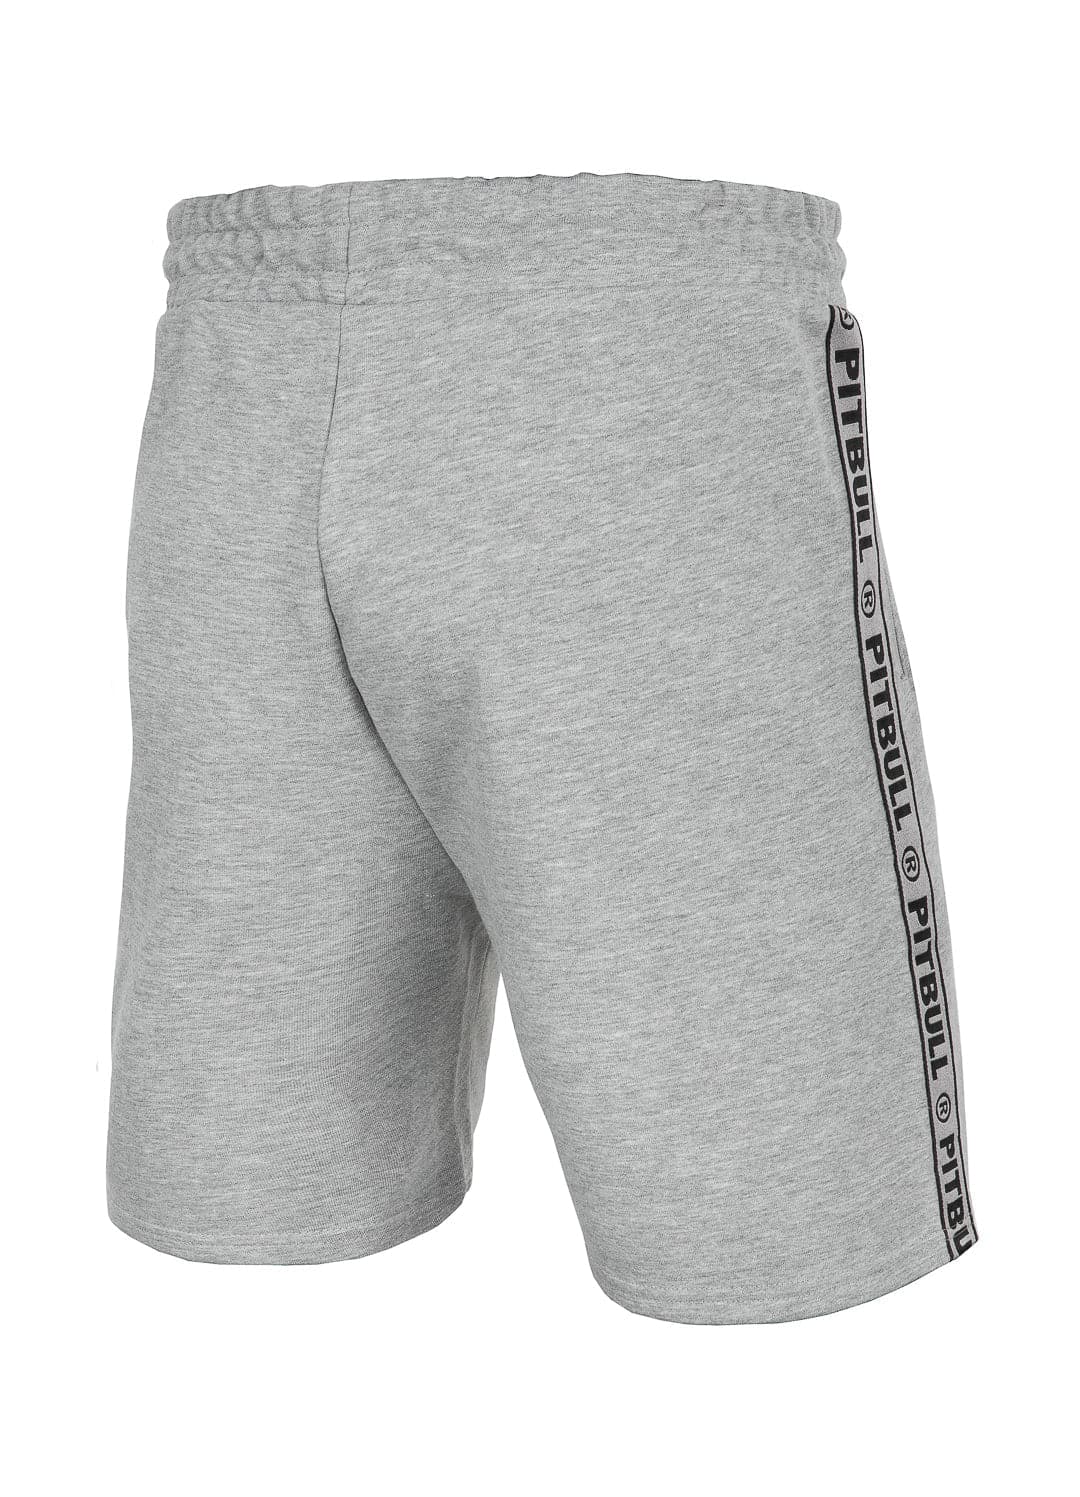 MERIDAN Grey Shorts